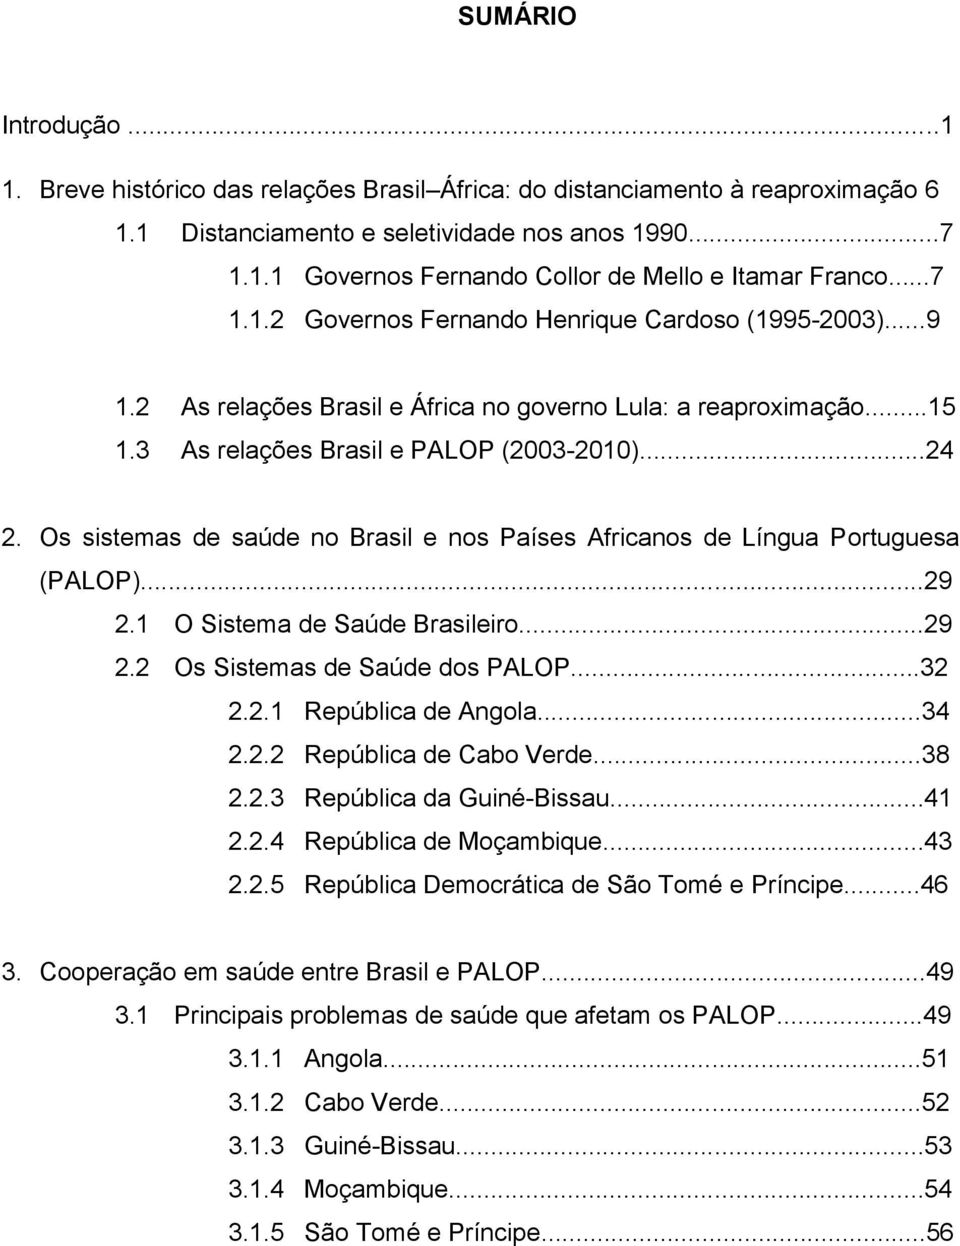 Os sistemas de saúde no Brasil e nos Países Africanos de Língua Portuguesa (PALOP)...29 2.1 O Sistema de Saúde Brasileiro...29 2.2 Os Sistemas de Saúde dos PALOP...32 2.2.1 República de Angola...34 2.